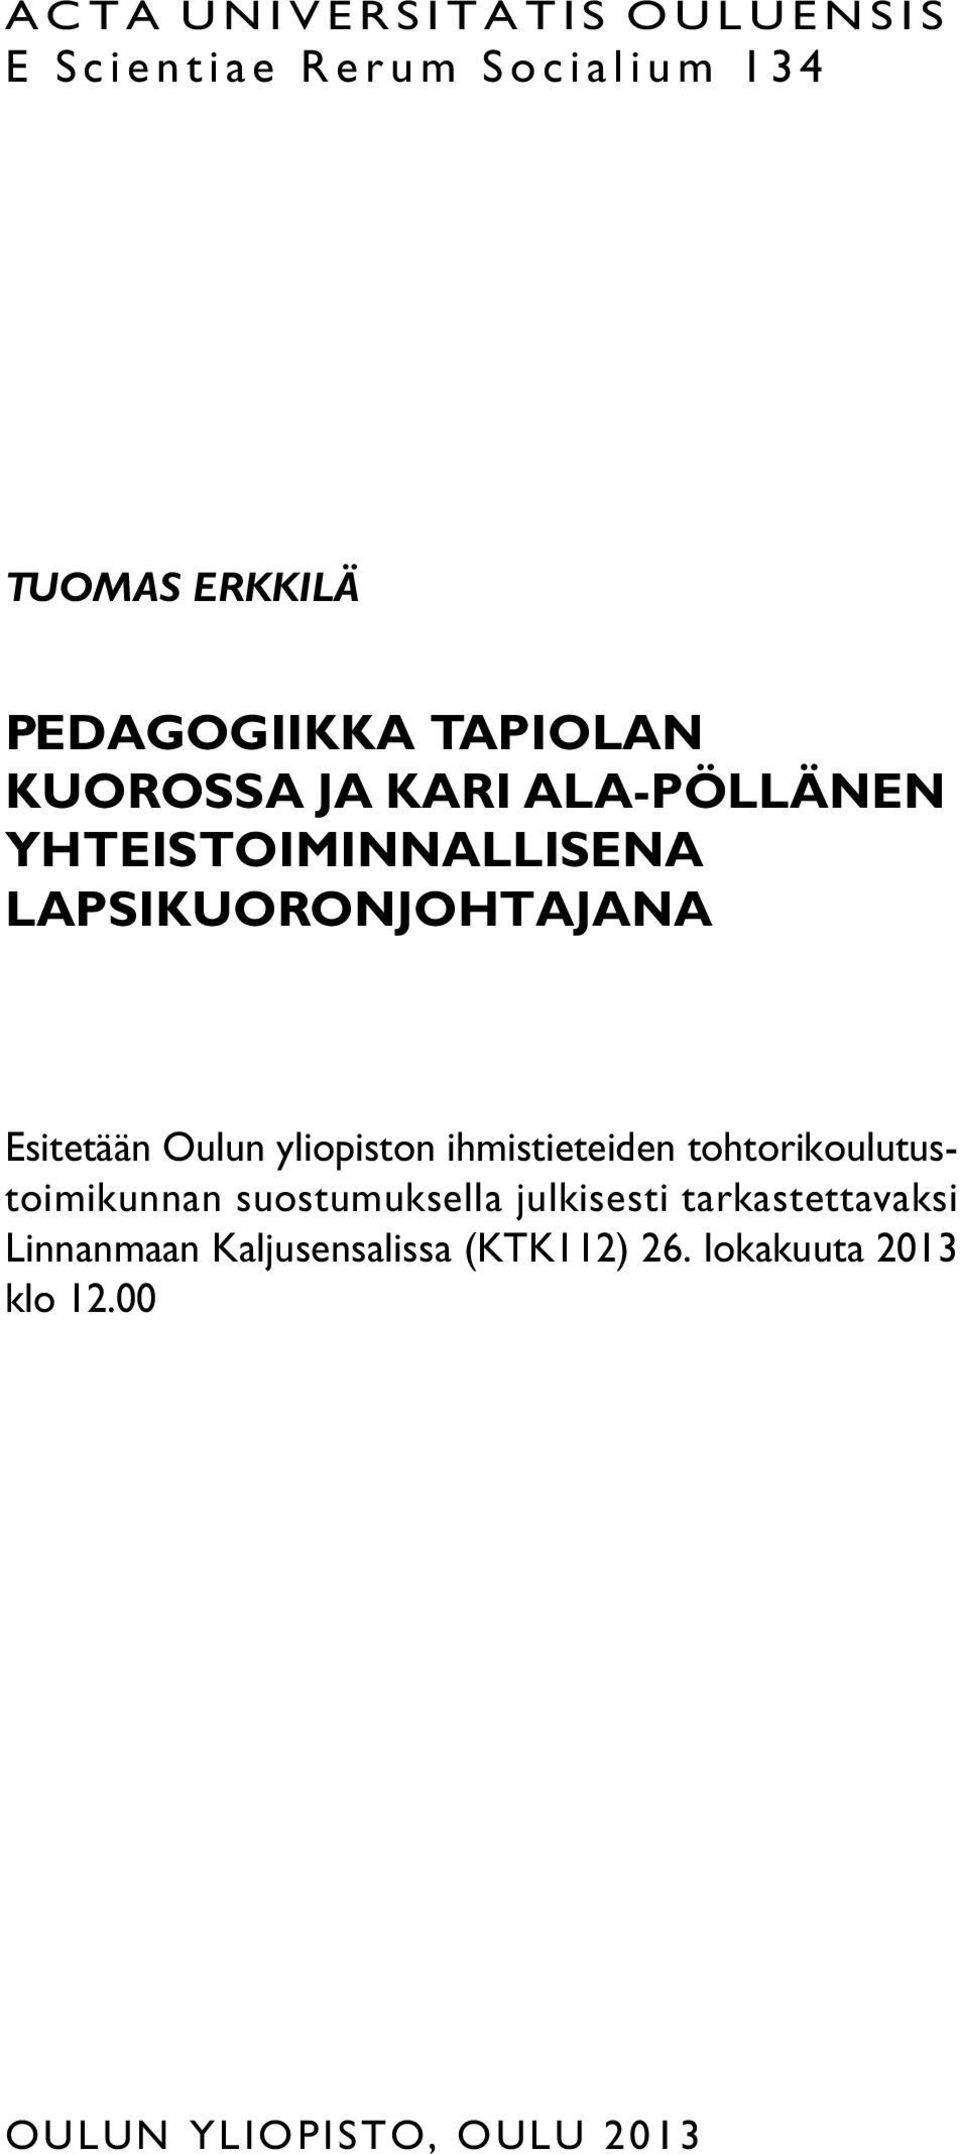 Oulun yliopiston ihmistieteiden tohtorikoulutustoimikunnan suostumuksella julkisesti